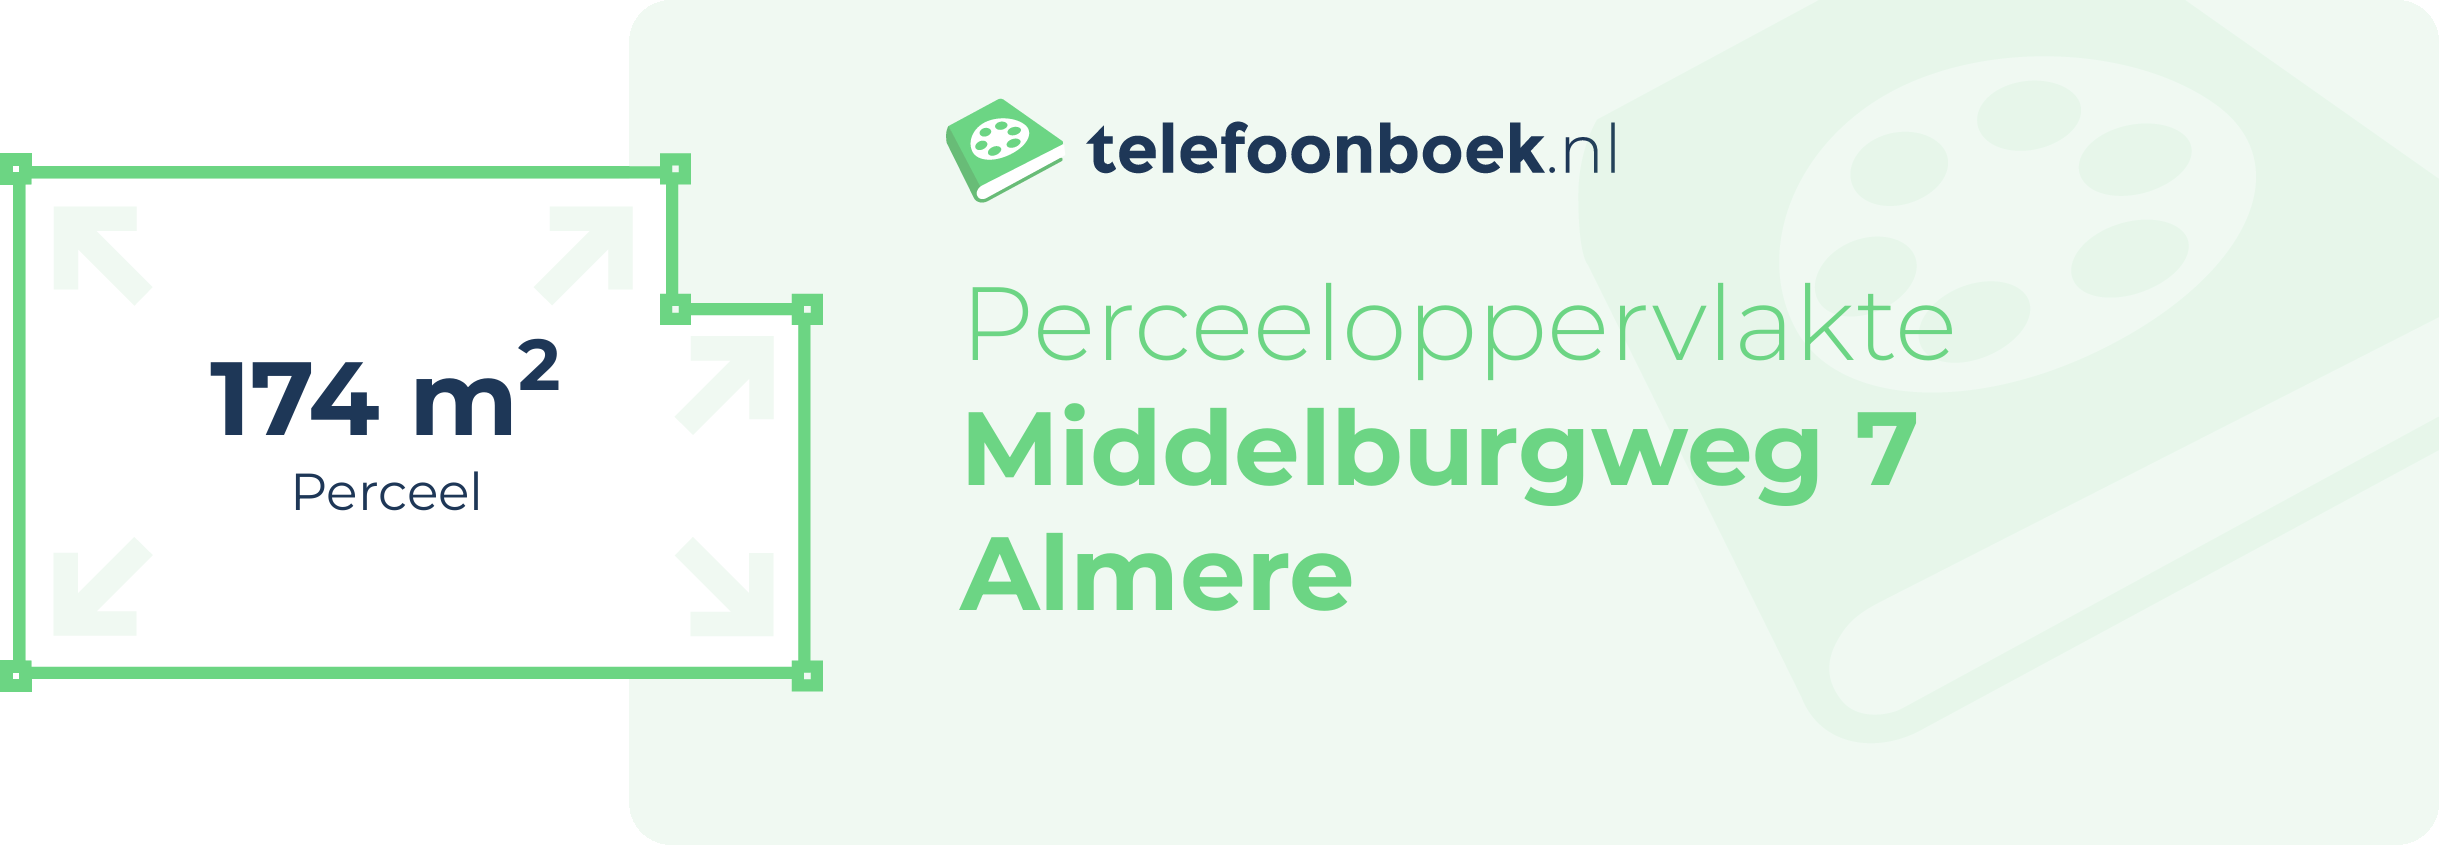 Perceeloppervlakte Middelburgweg 7 Almere